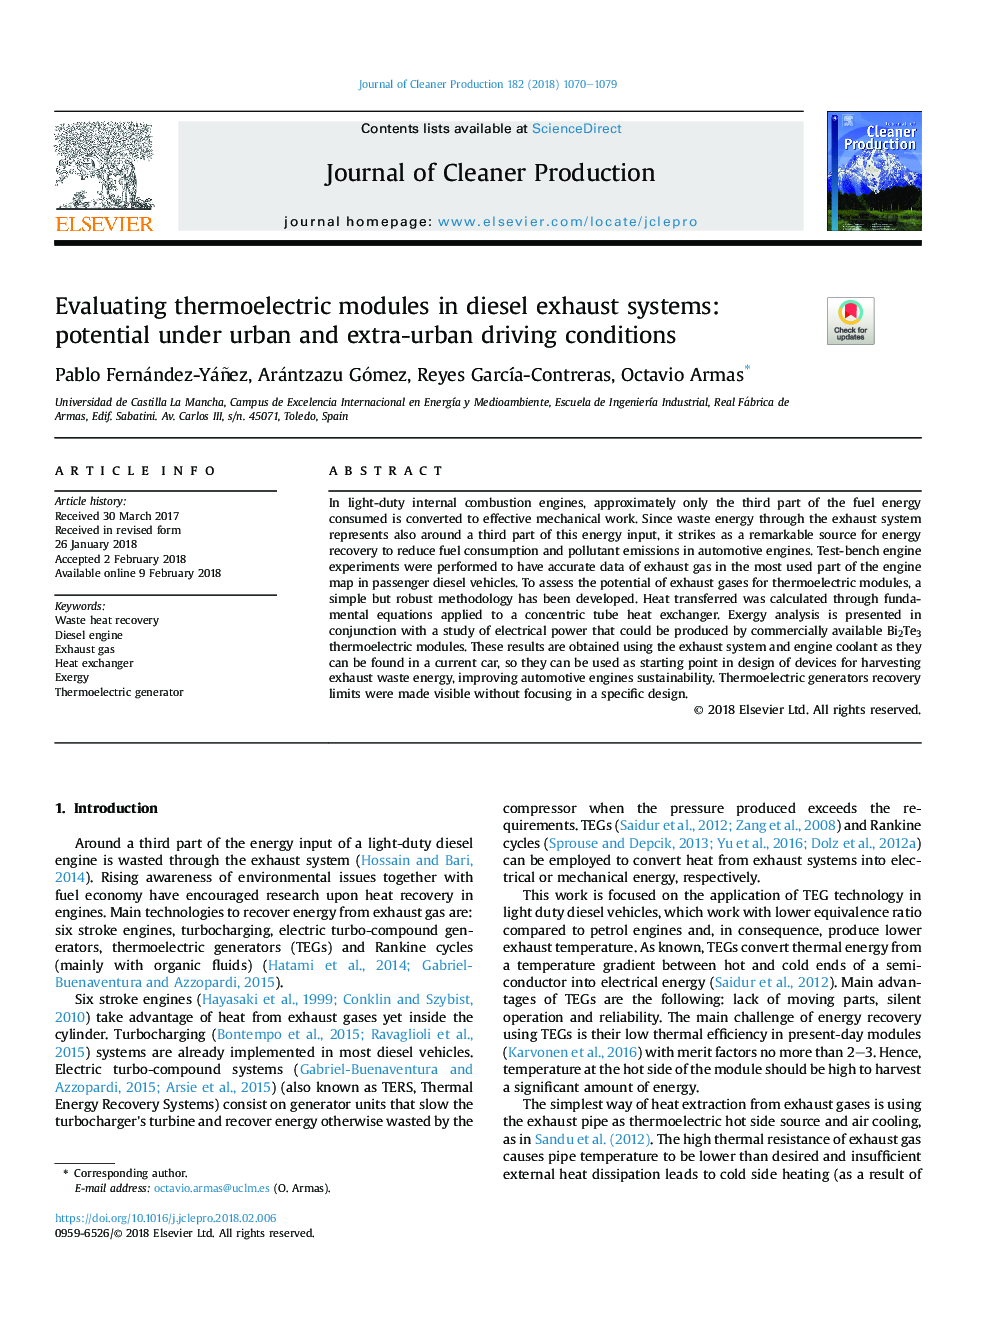 ارزیابی ماژول های ترموالکتریک در سیستم های اگزوز دیزلی: پتانسیل در شرایط رانندگی شهری و خارج از شهر 